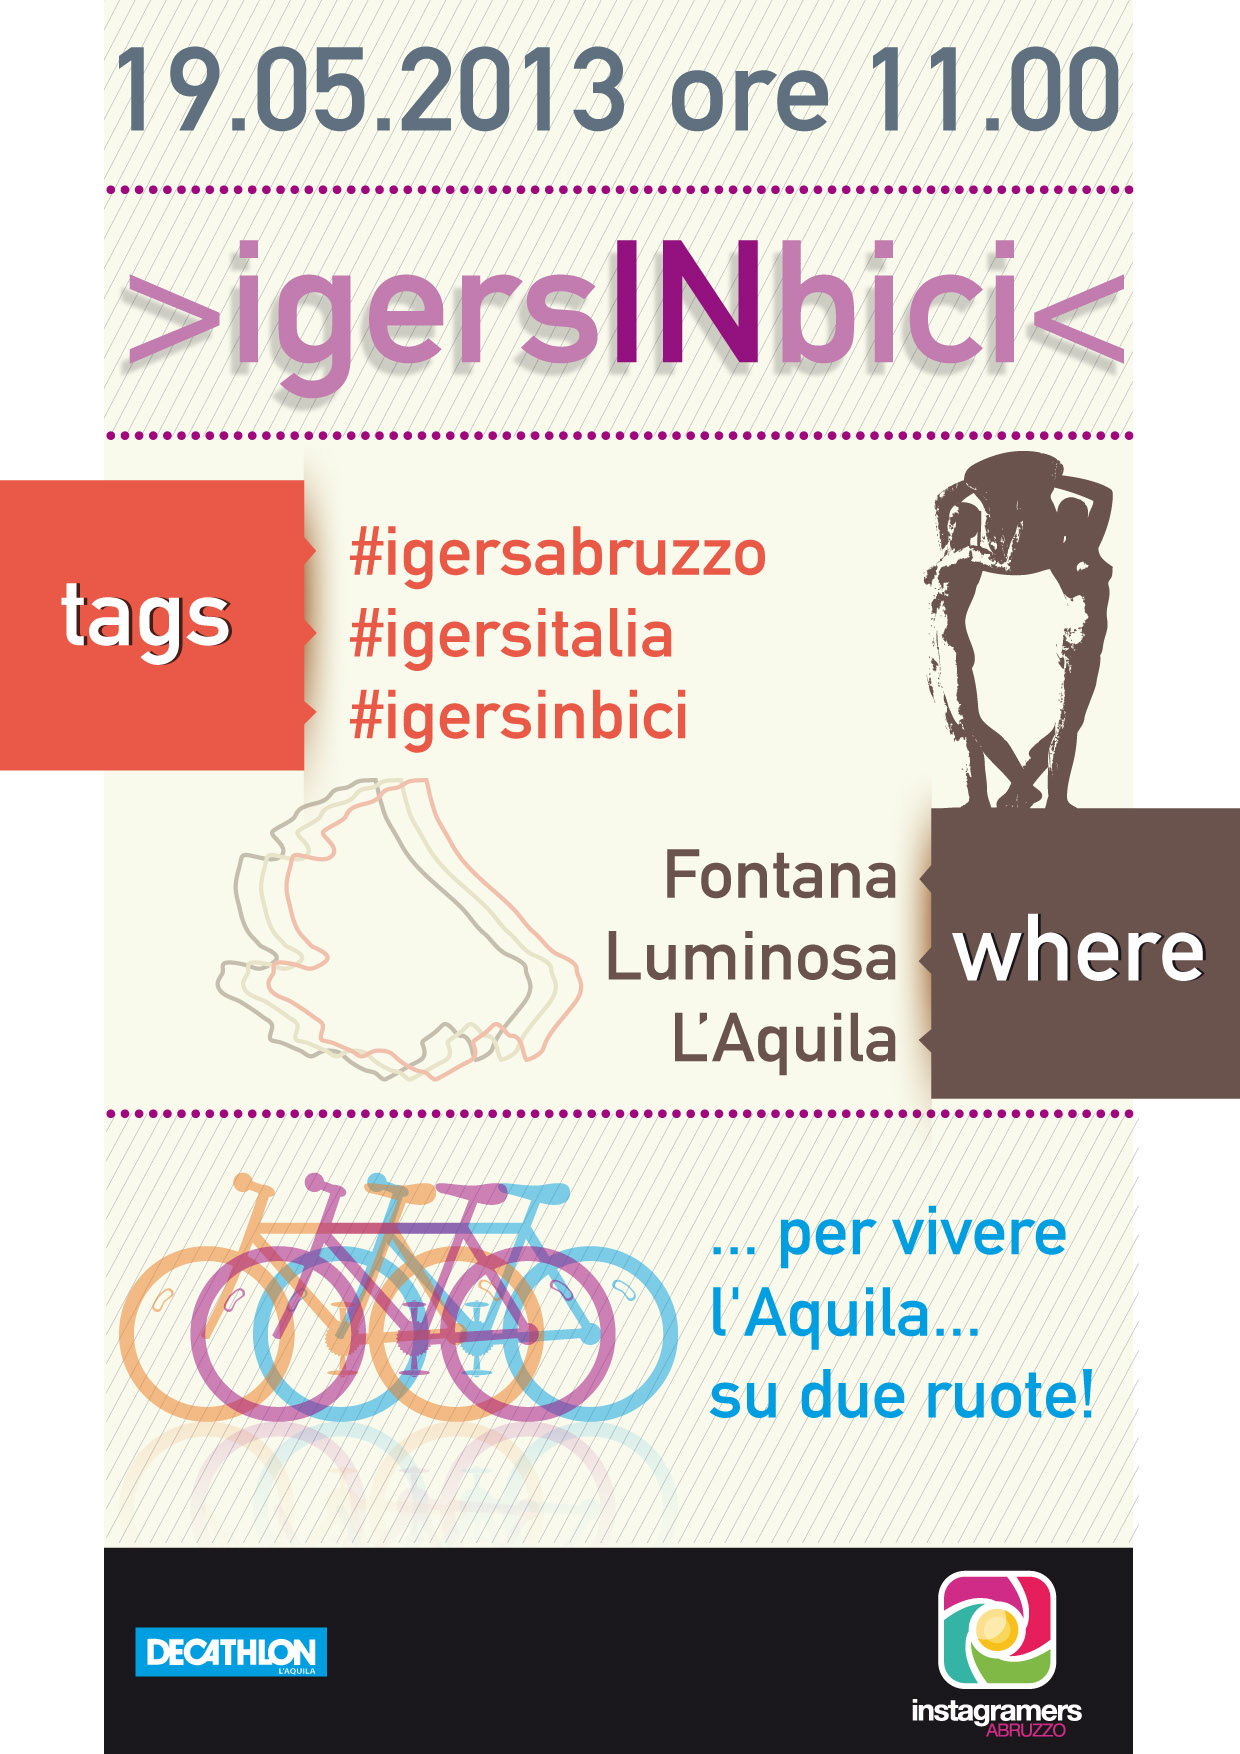 L'Aquila su due ruote con gli Instagramers in bicicletta